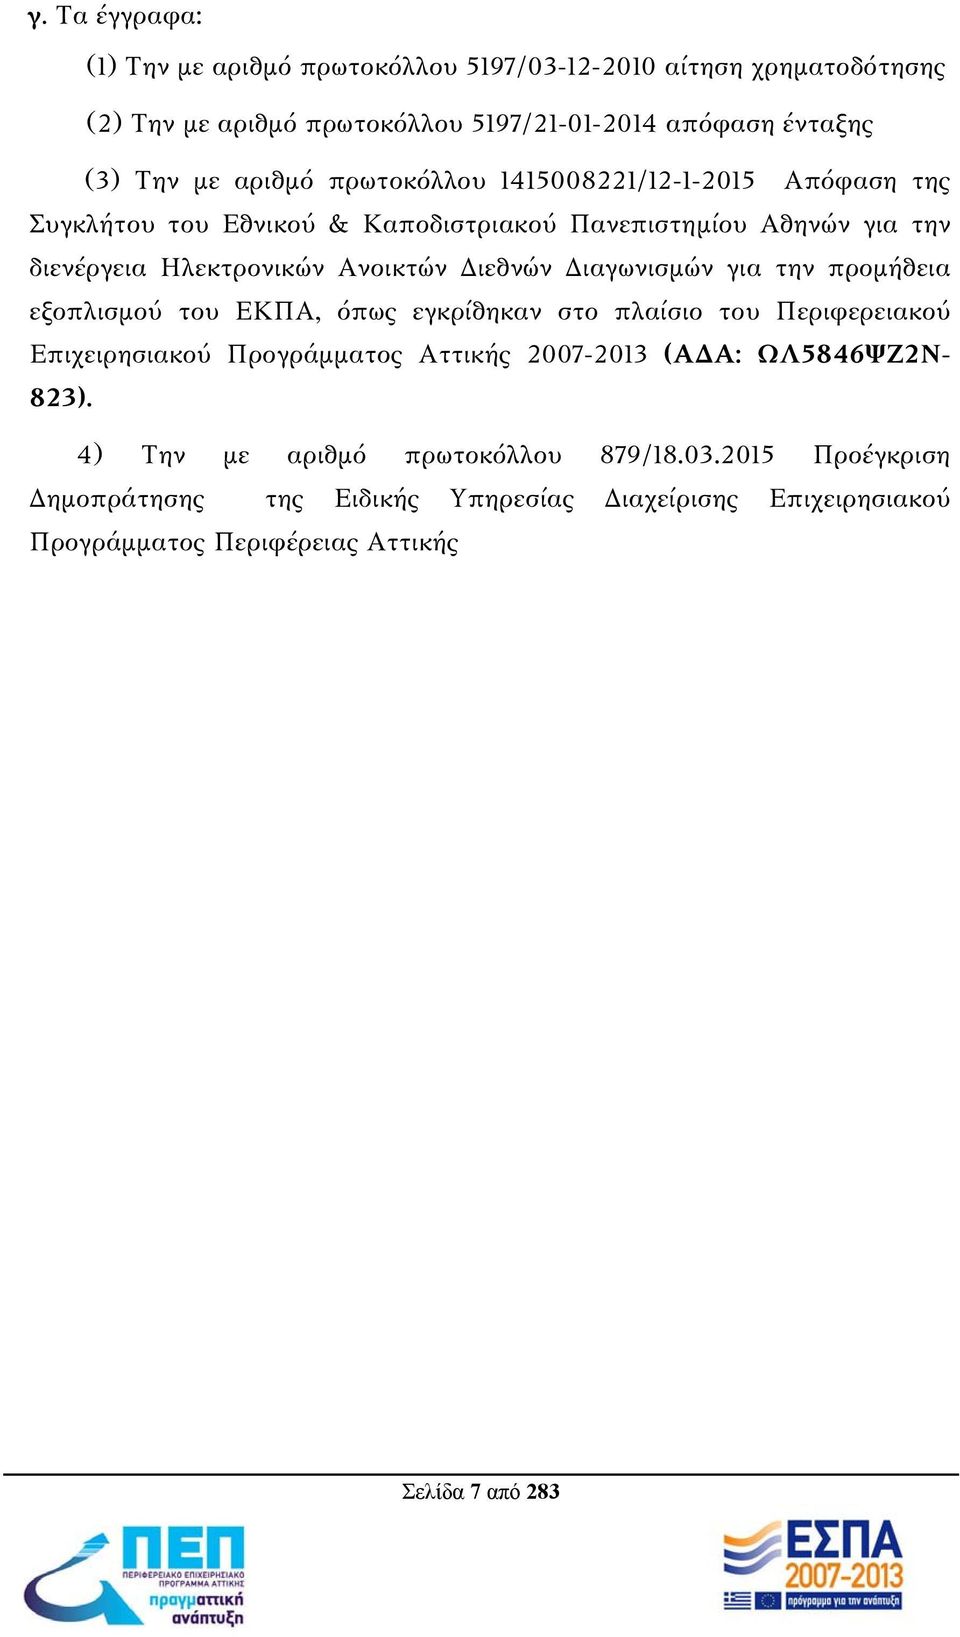 Διαγωνισμών για την προμήθεια εξοπλισμού του ΕΚΠΑ, όπως εγκρίθηκαν στο πλαίσιο του Περιφερειακού Επιχειρησιακού Προγράμματος Αττικής 2007-2013 (ΑΔΑ: ΩΛ5846ΨΖ2Ν-